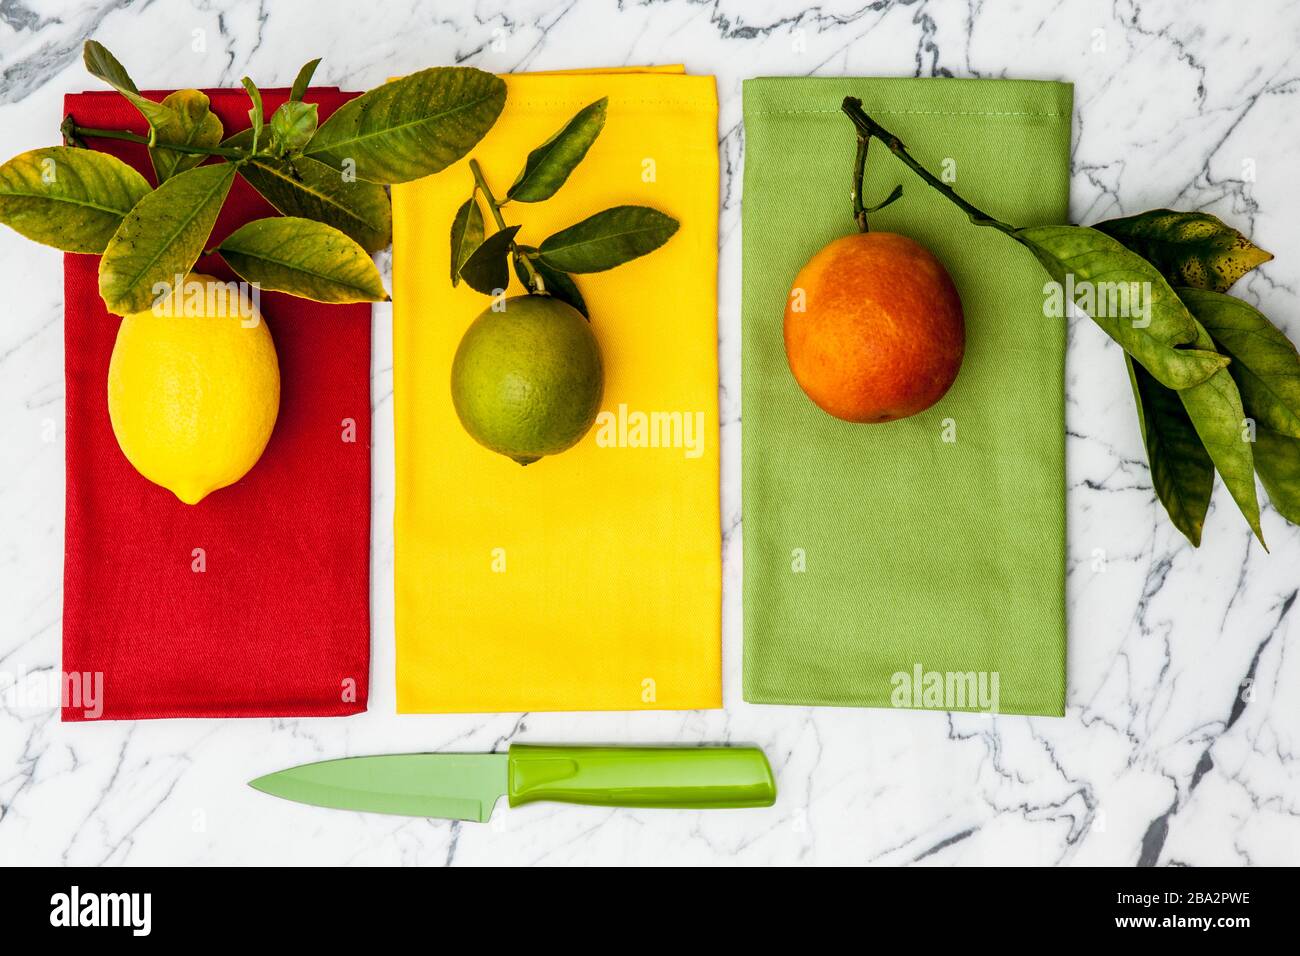 limón, lima y naranja sanguã neo con cuchillo de paring en mostrador de mármol Foto de stock